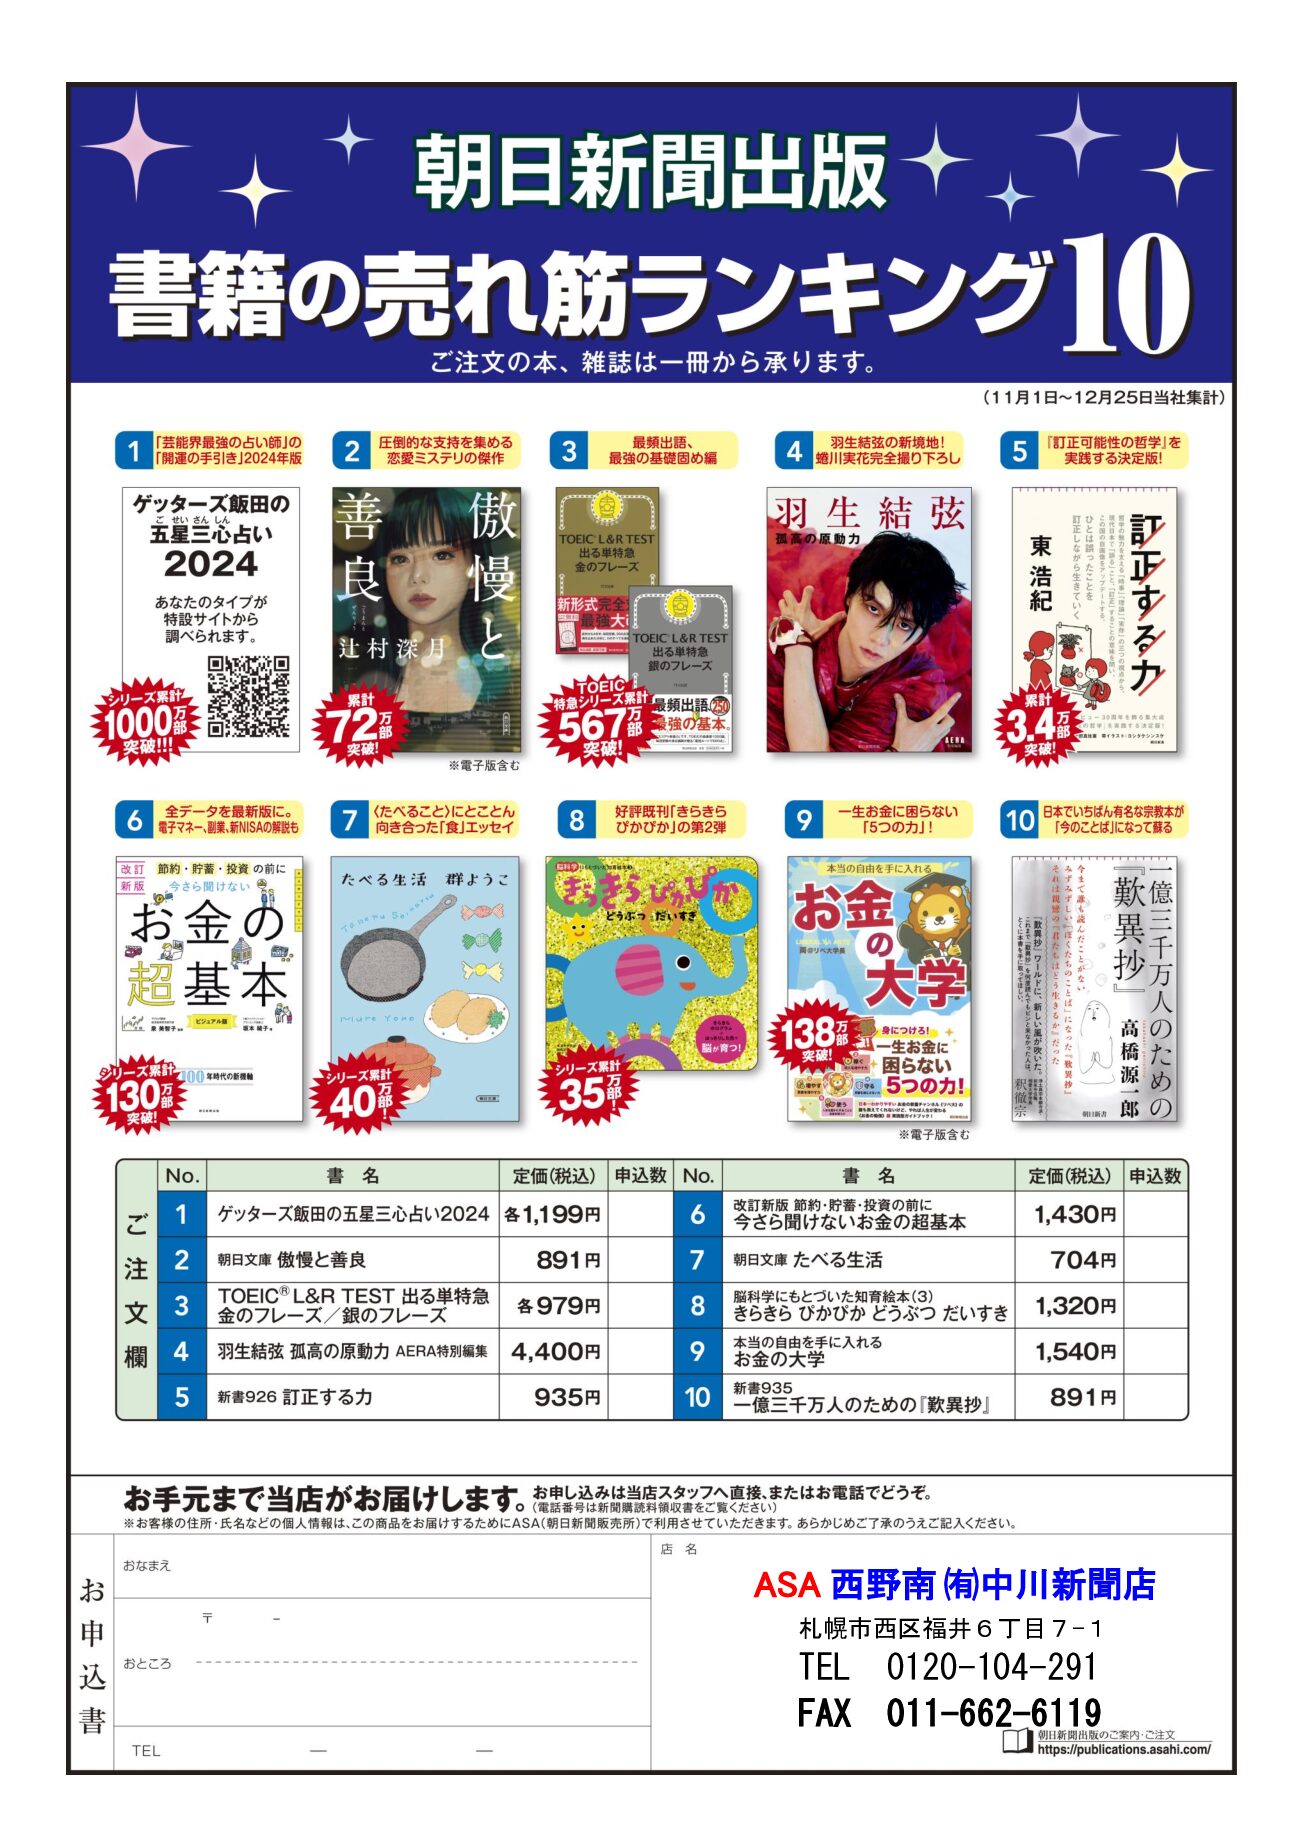 朝日新聞出版 書箱の売れ筋ランキング10 1月